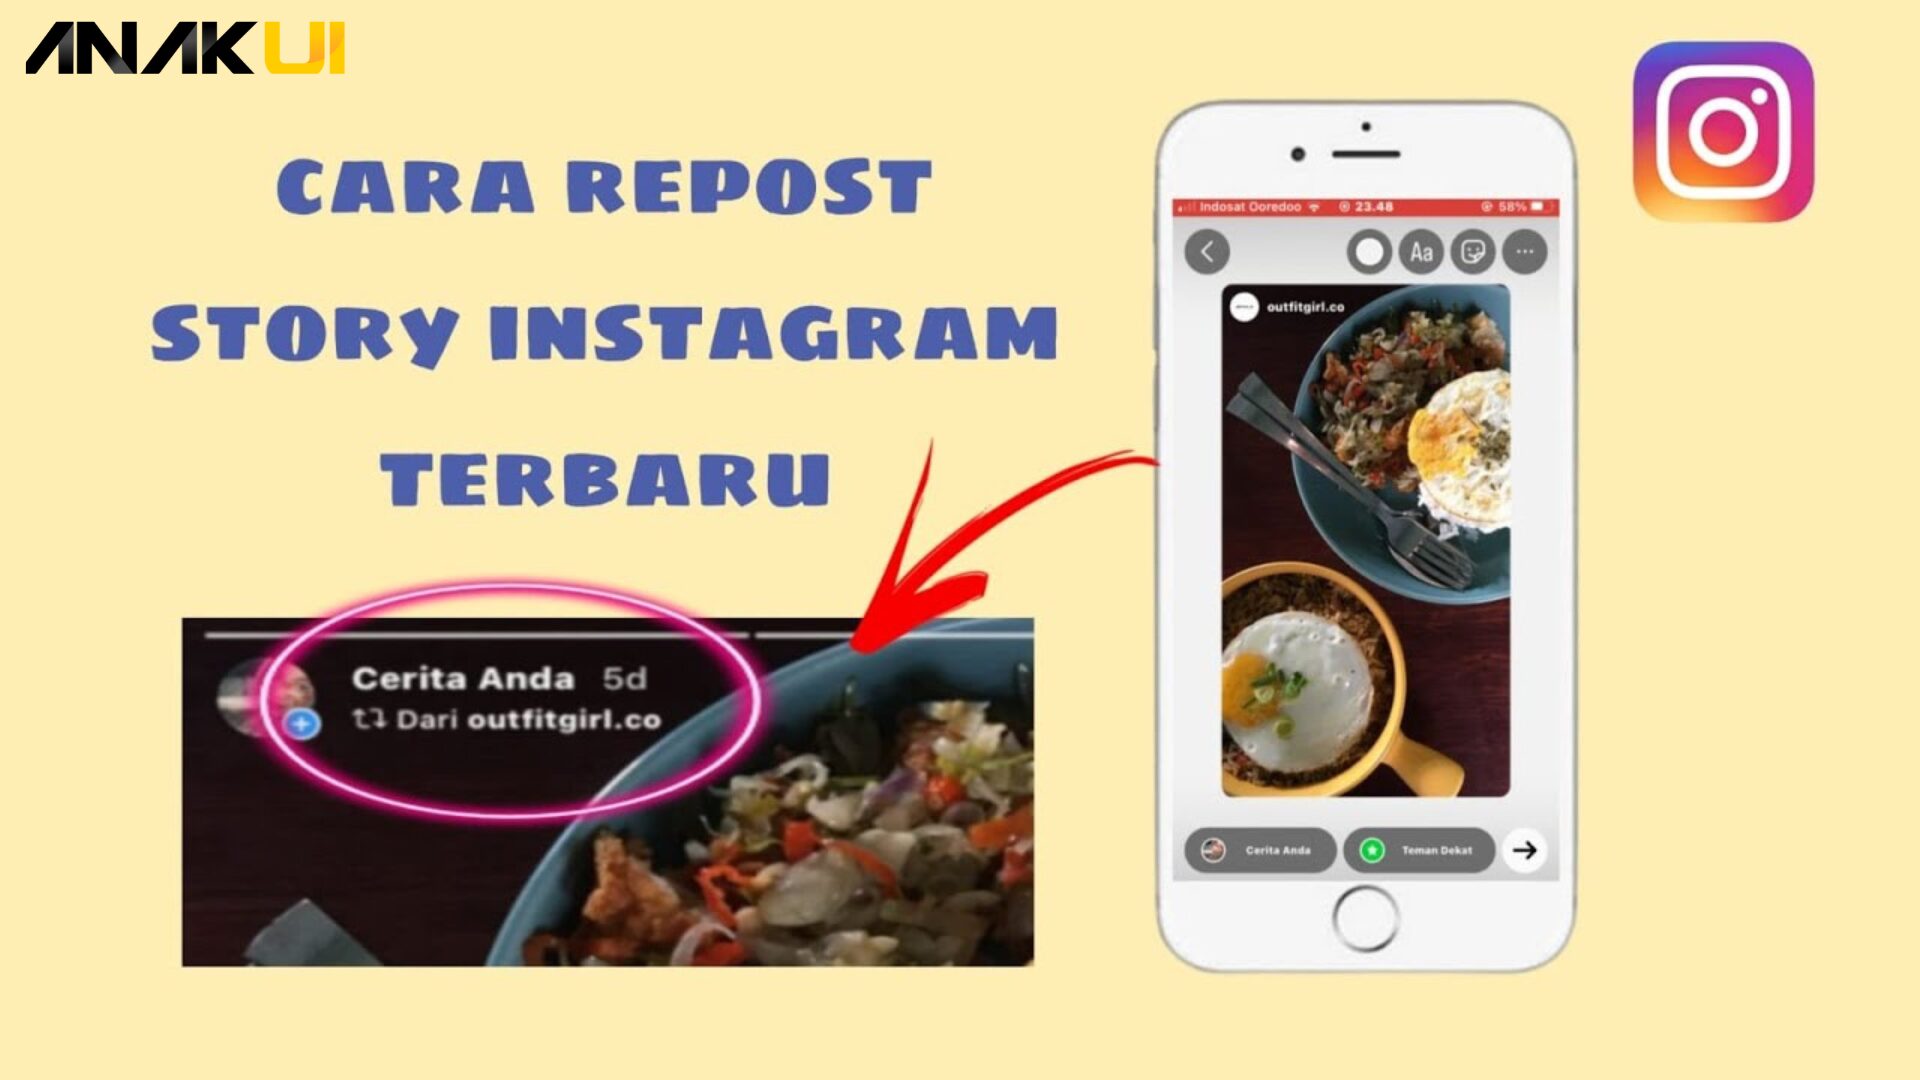 Cara Repost Story Instagram Terbaru